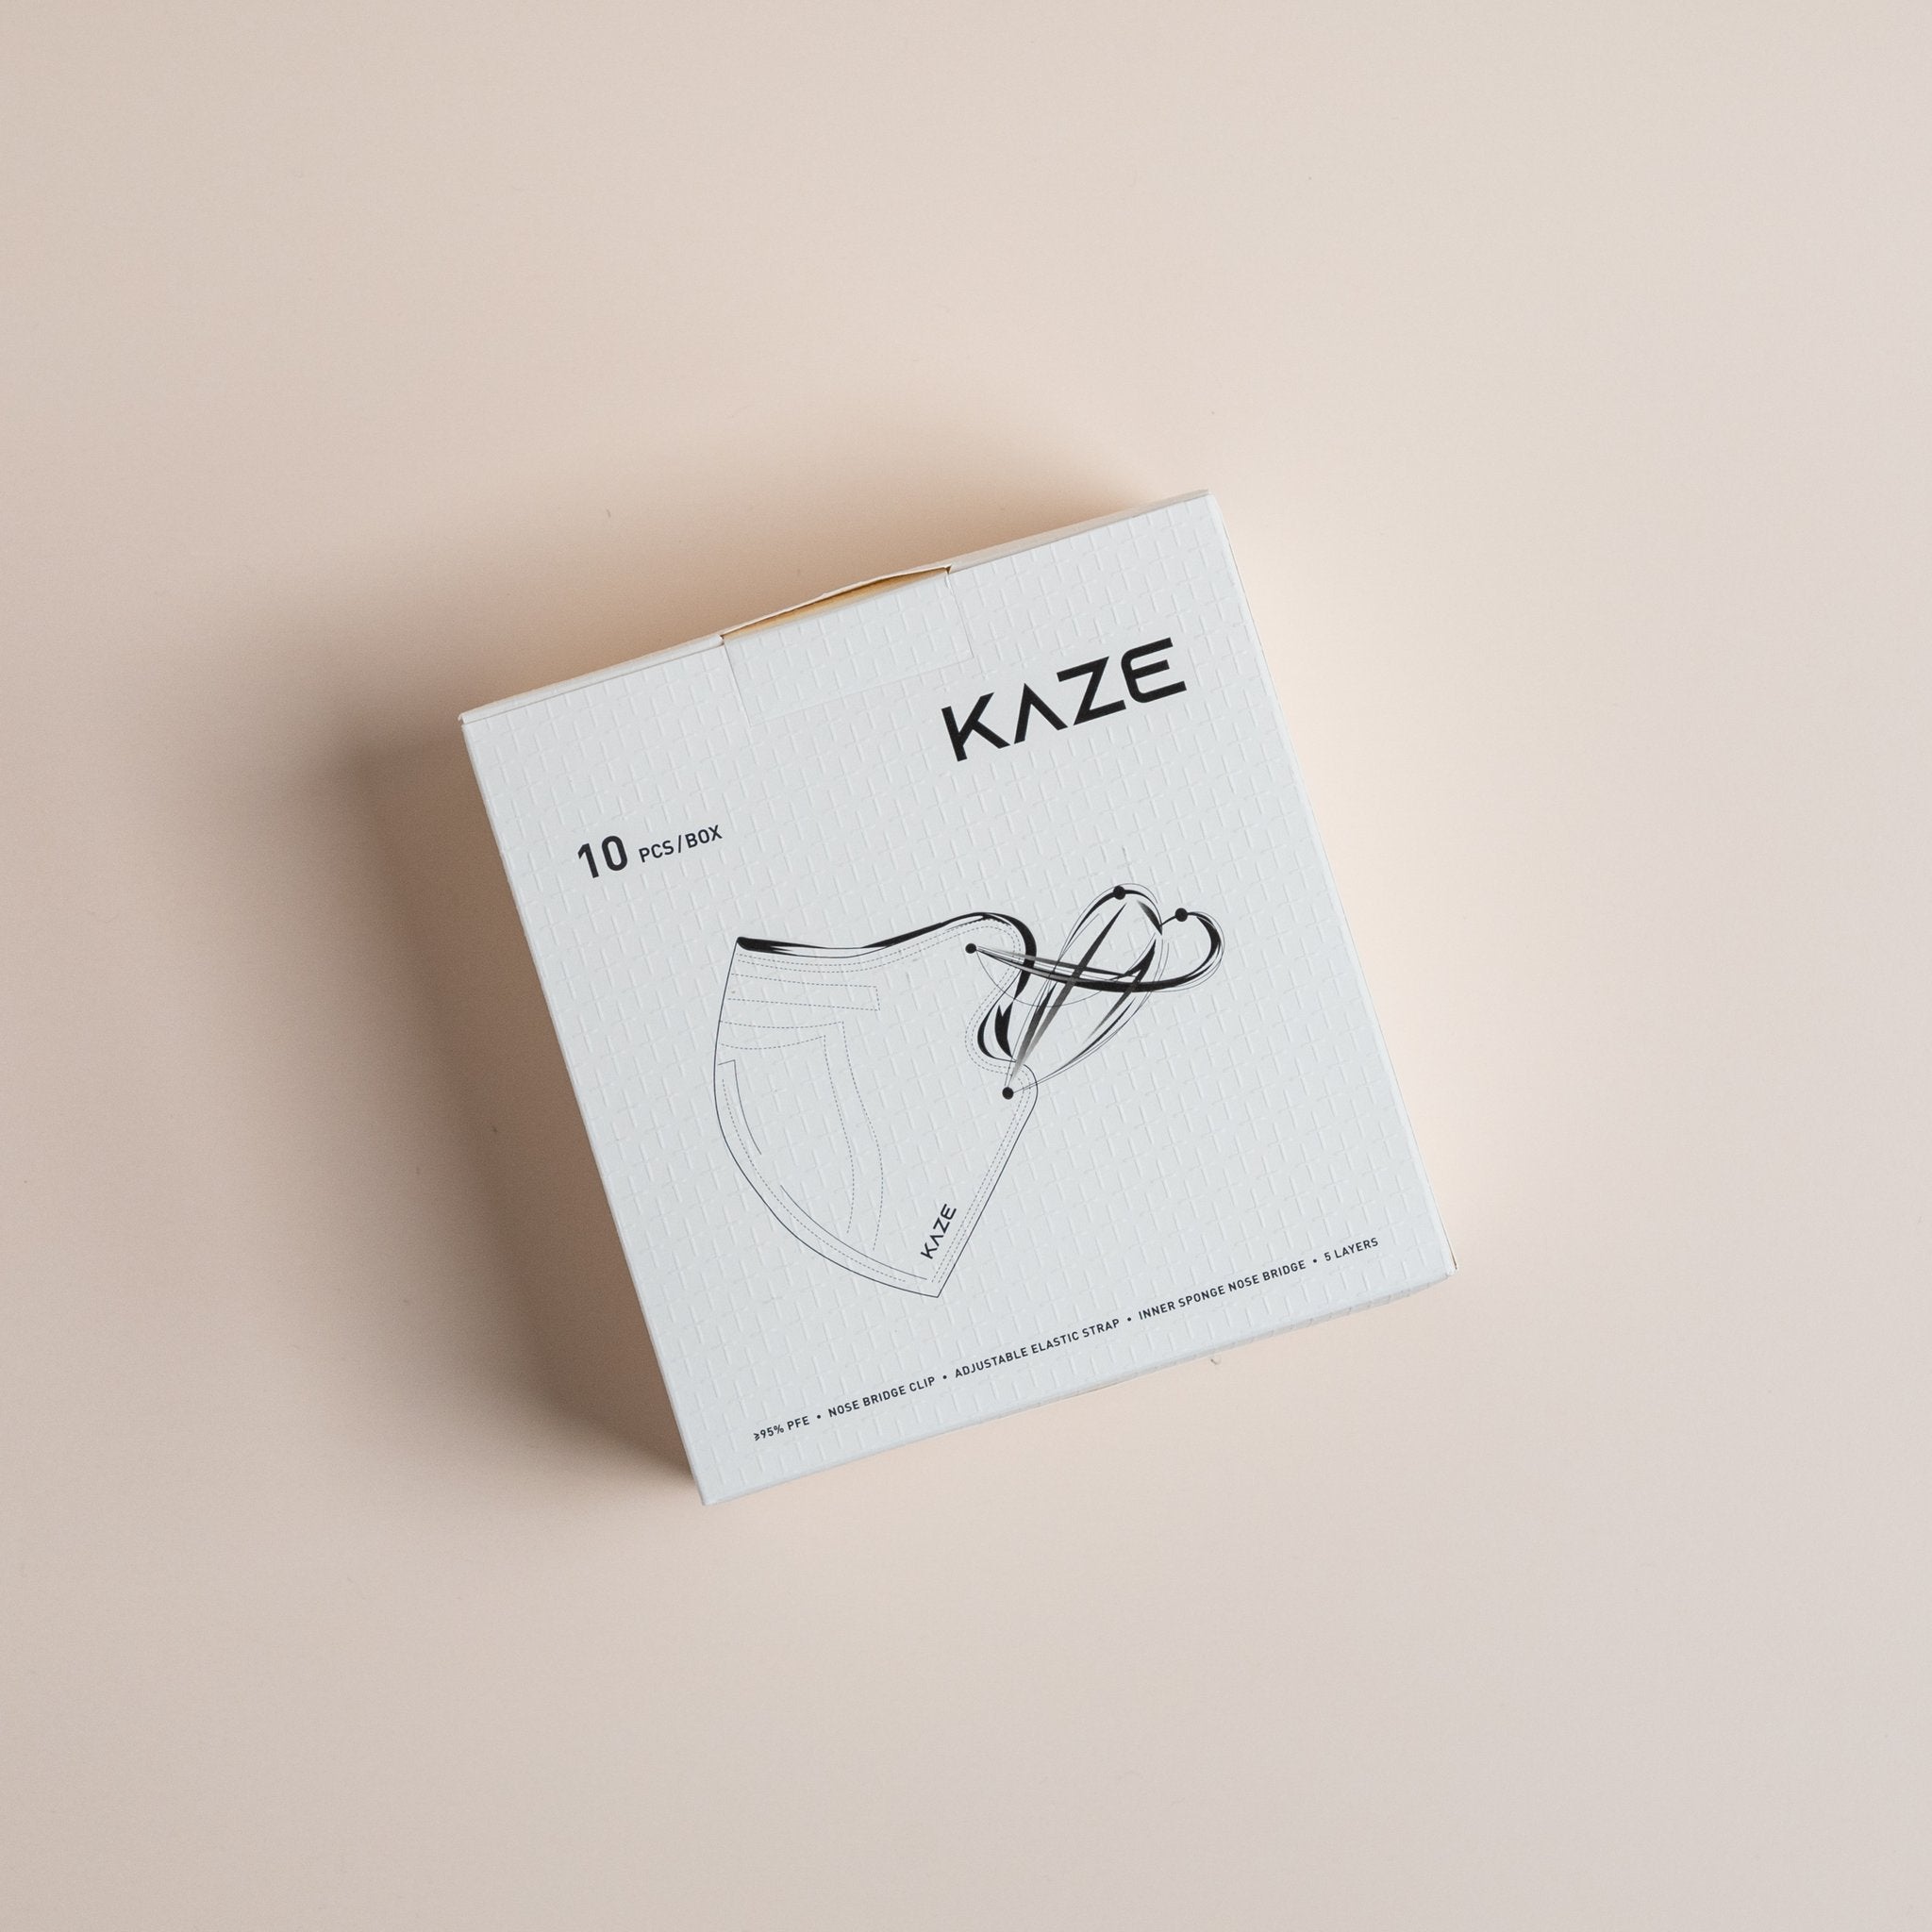 KAZE Masks - Mini Eye Candy Series